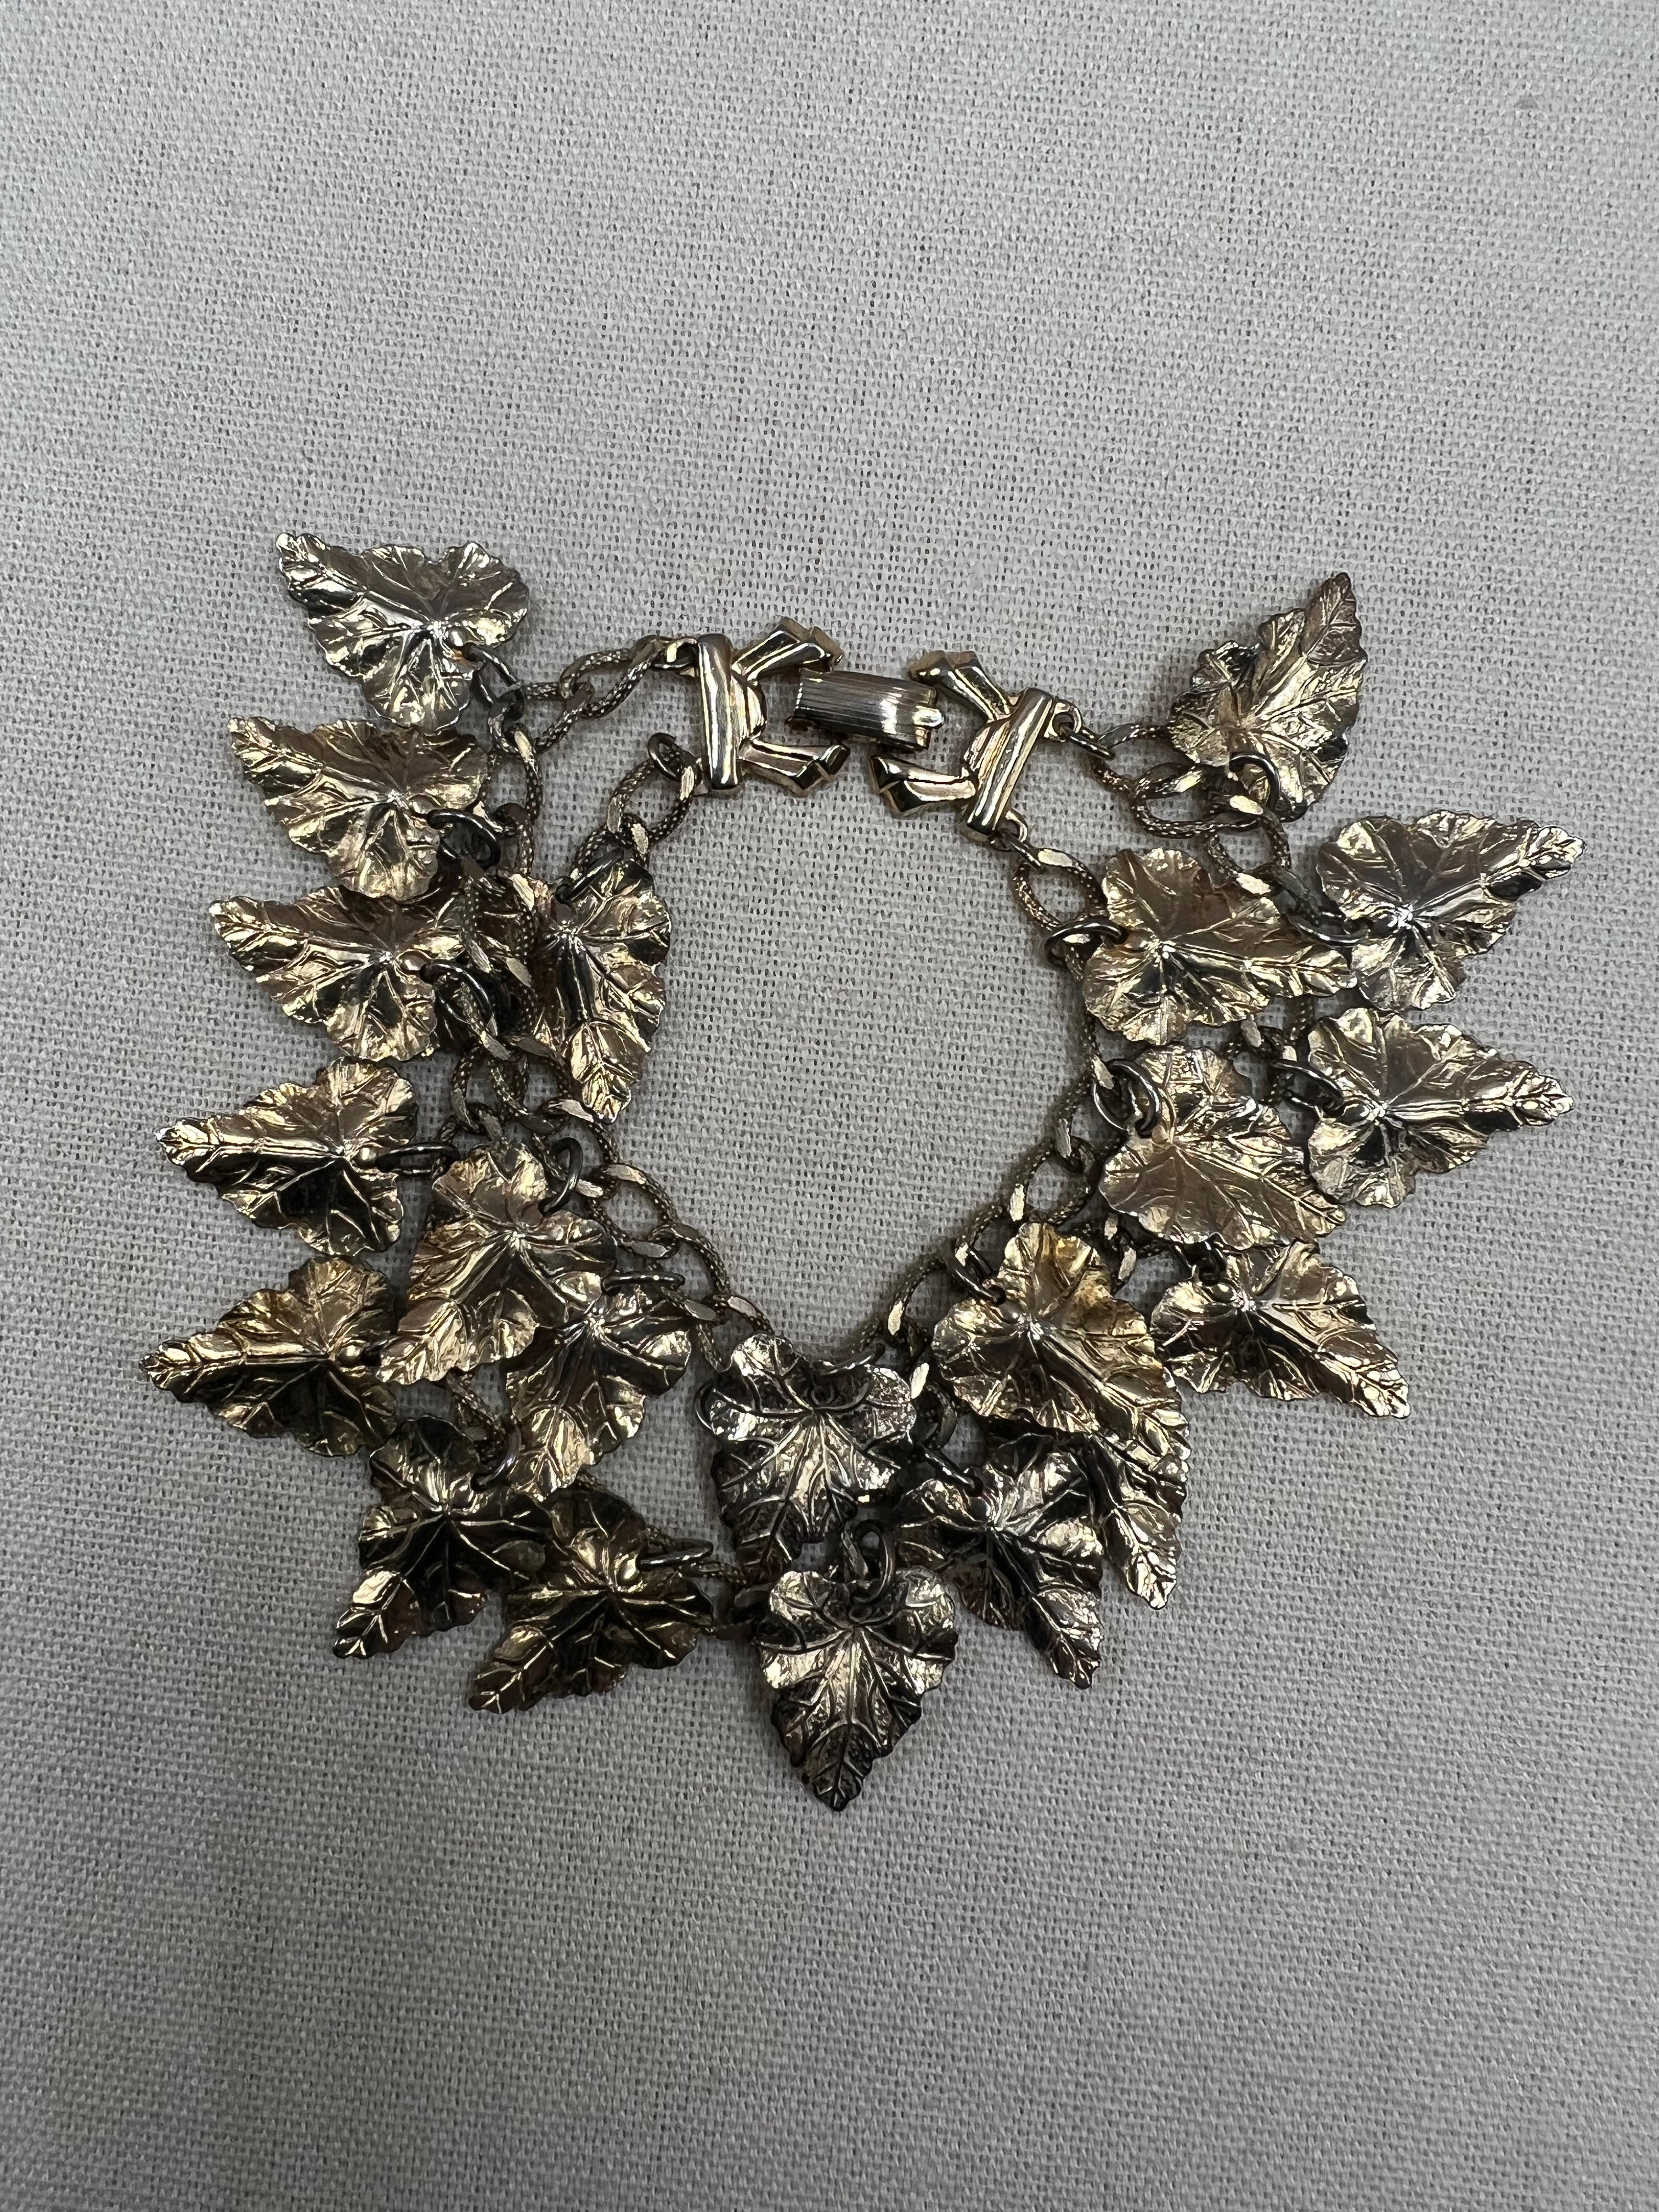 Vintage Leaf Charm Bracelet